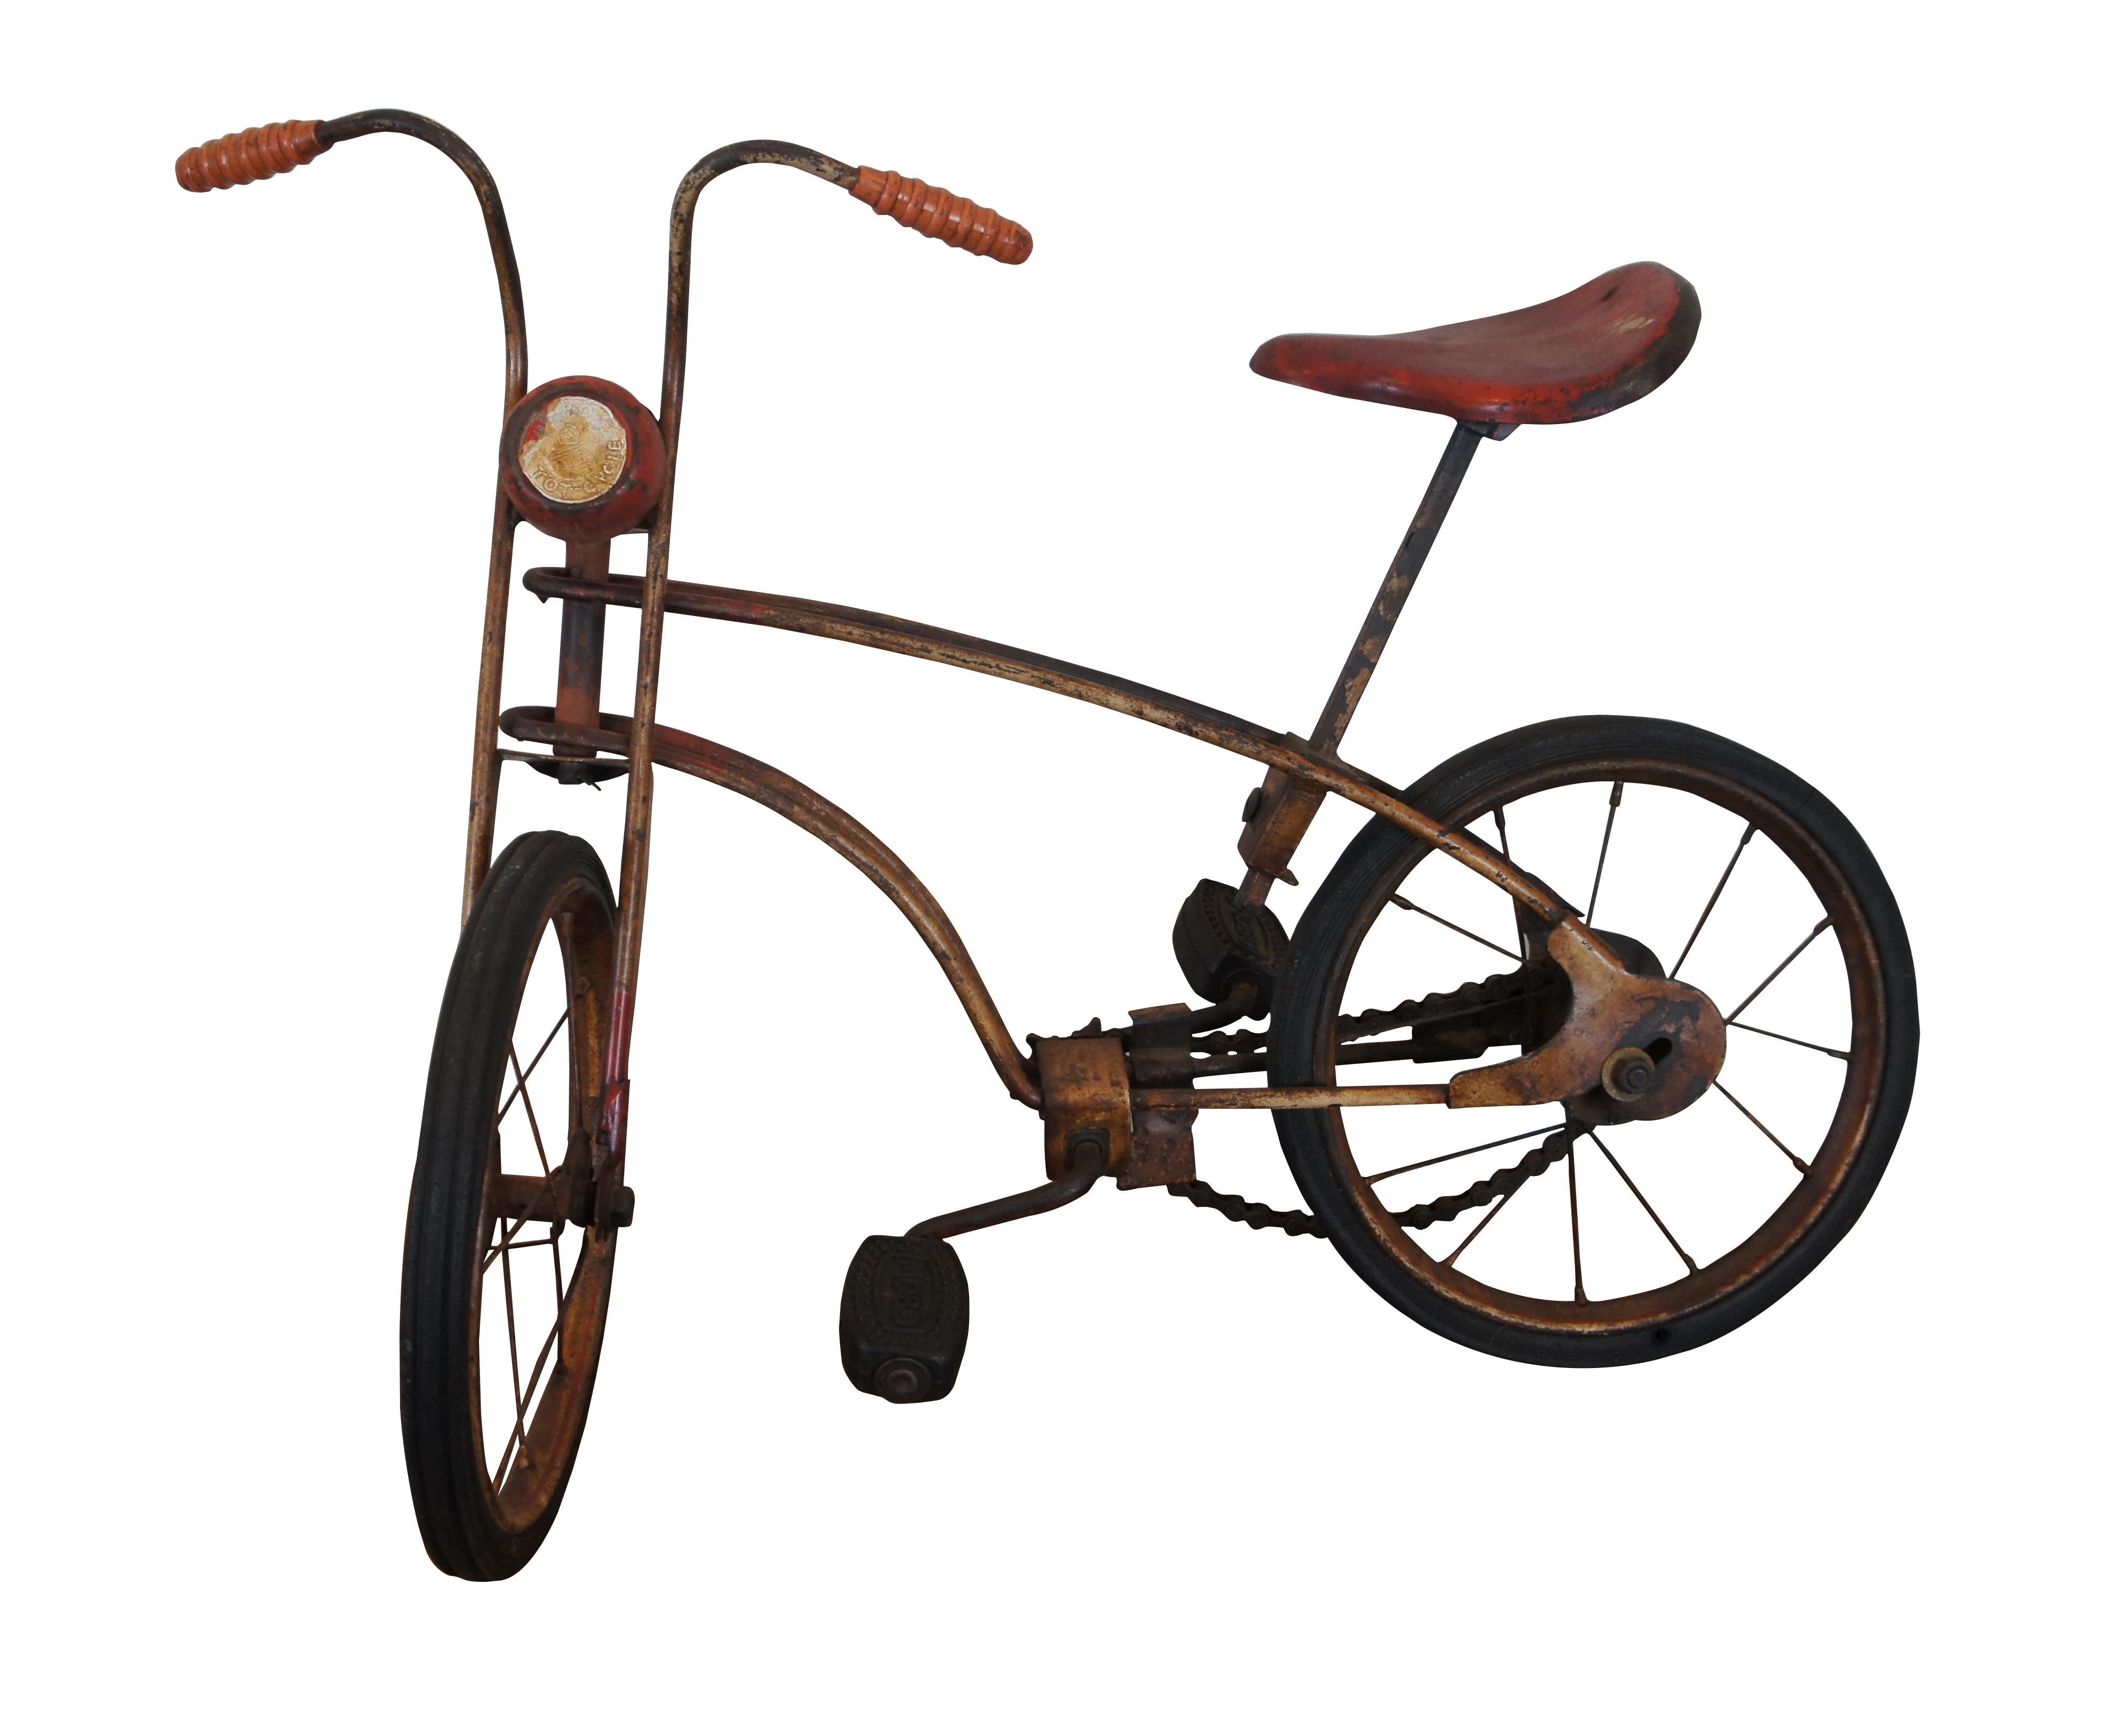 Antikes Kinderfahrrad, das Mobo Tot-Cycle von Sebel Products aus England.  Es verfügt über einen abgenutzten Stahlrahmen mit roter und weißer Lackierung, Gummireifen und Fußpedale, strukturierte Handgriffe und einen Metallsattel.  Circa 1926.